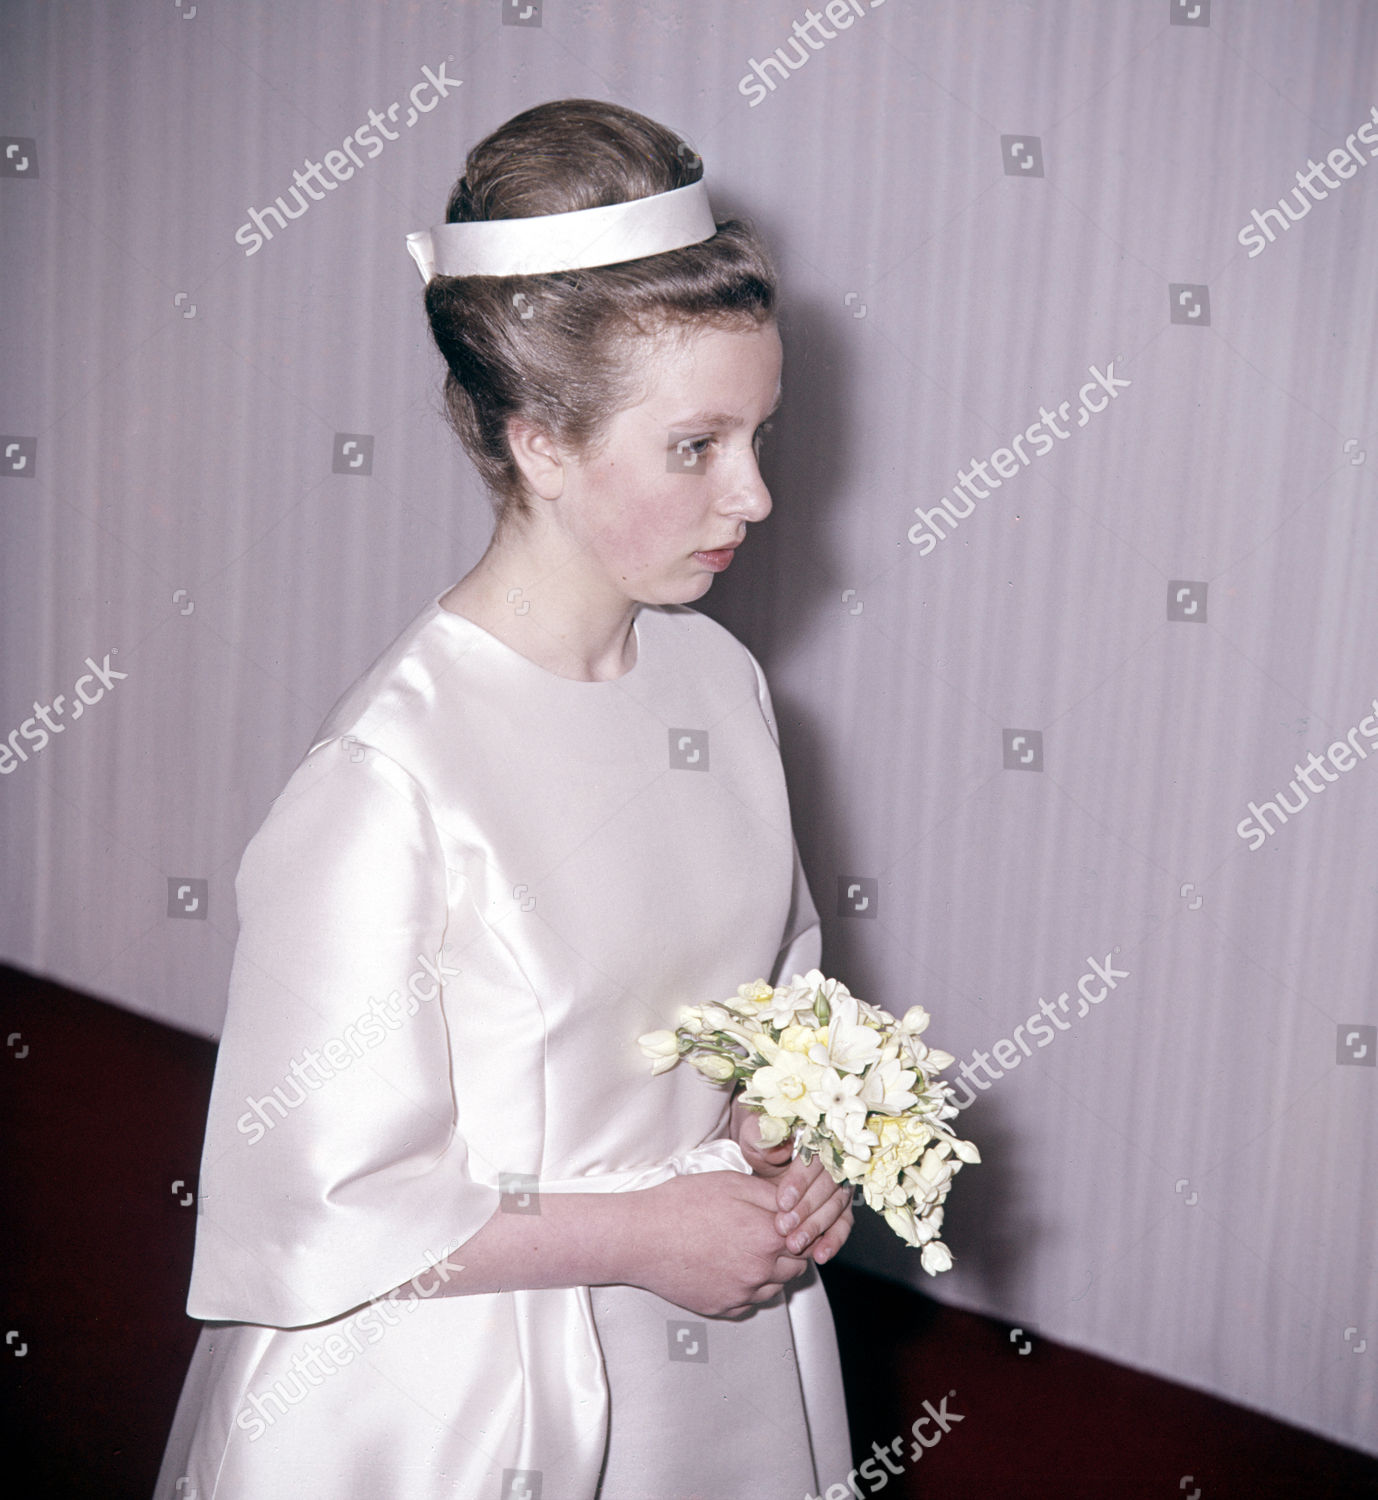 princess-anne-1960s-shutterstock-editorial-1218757am.jpg